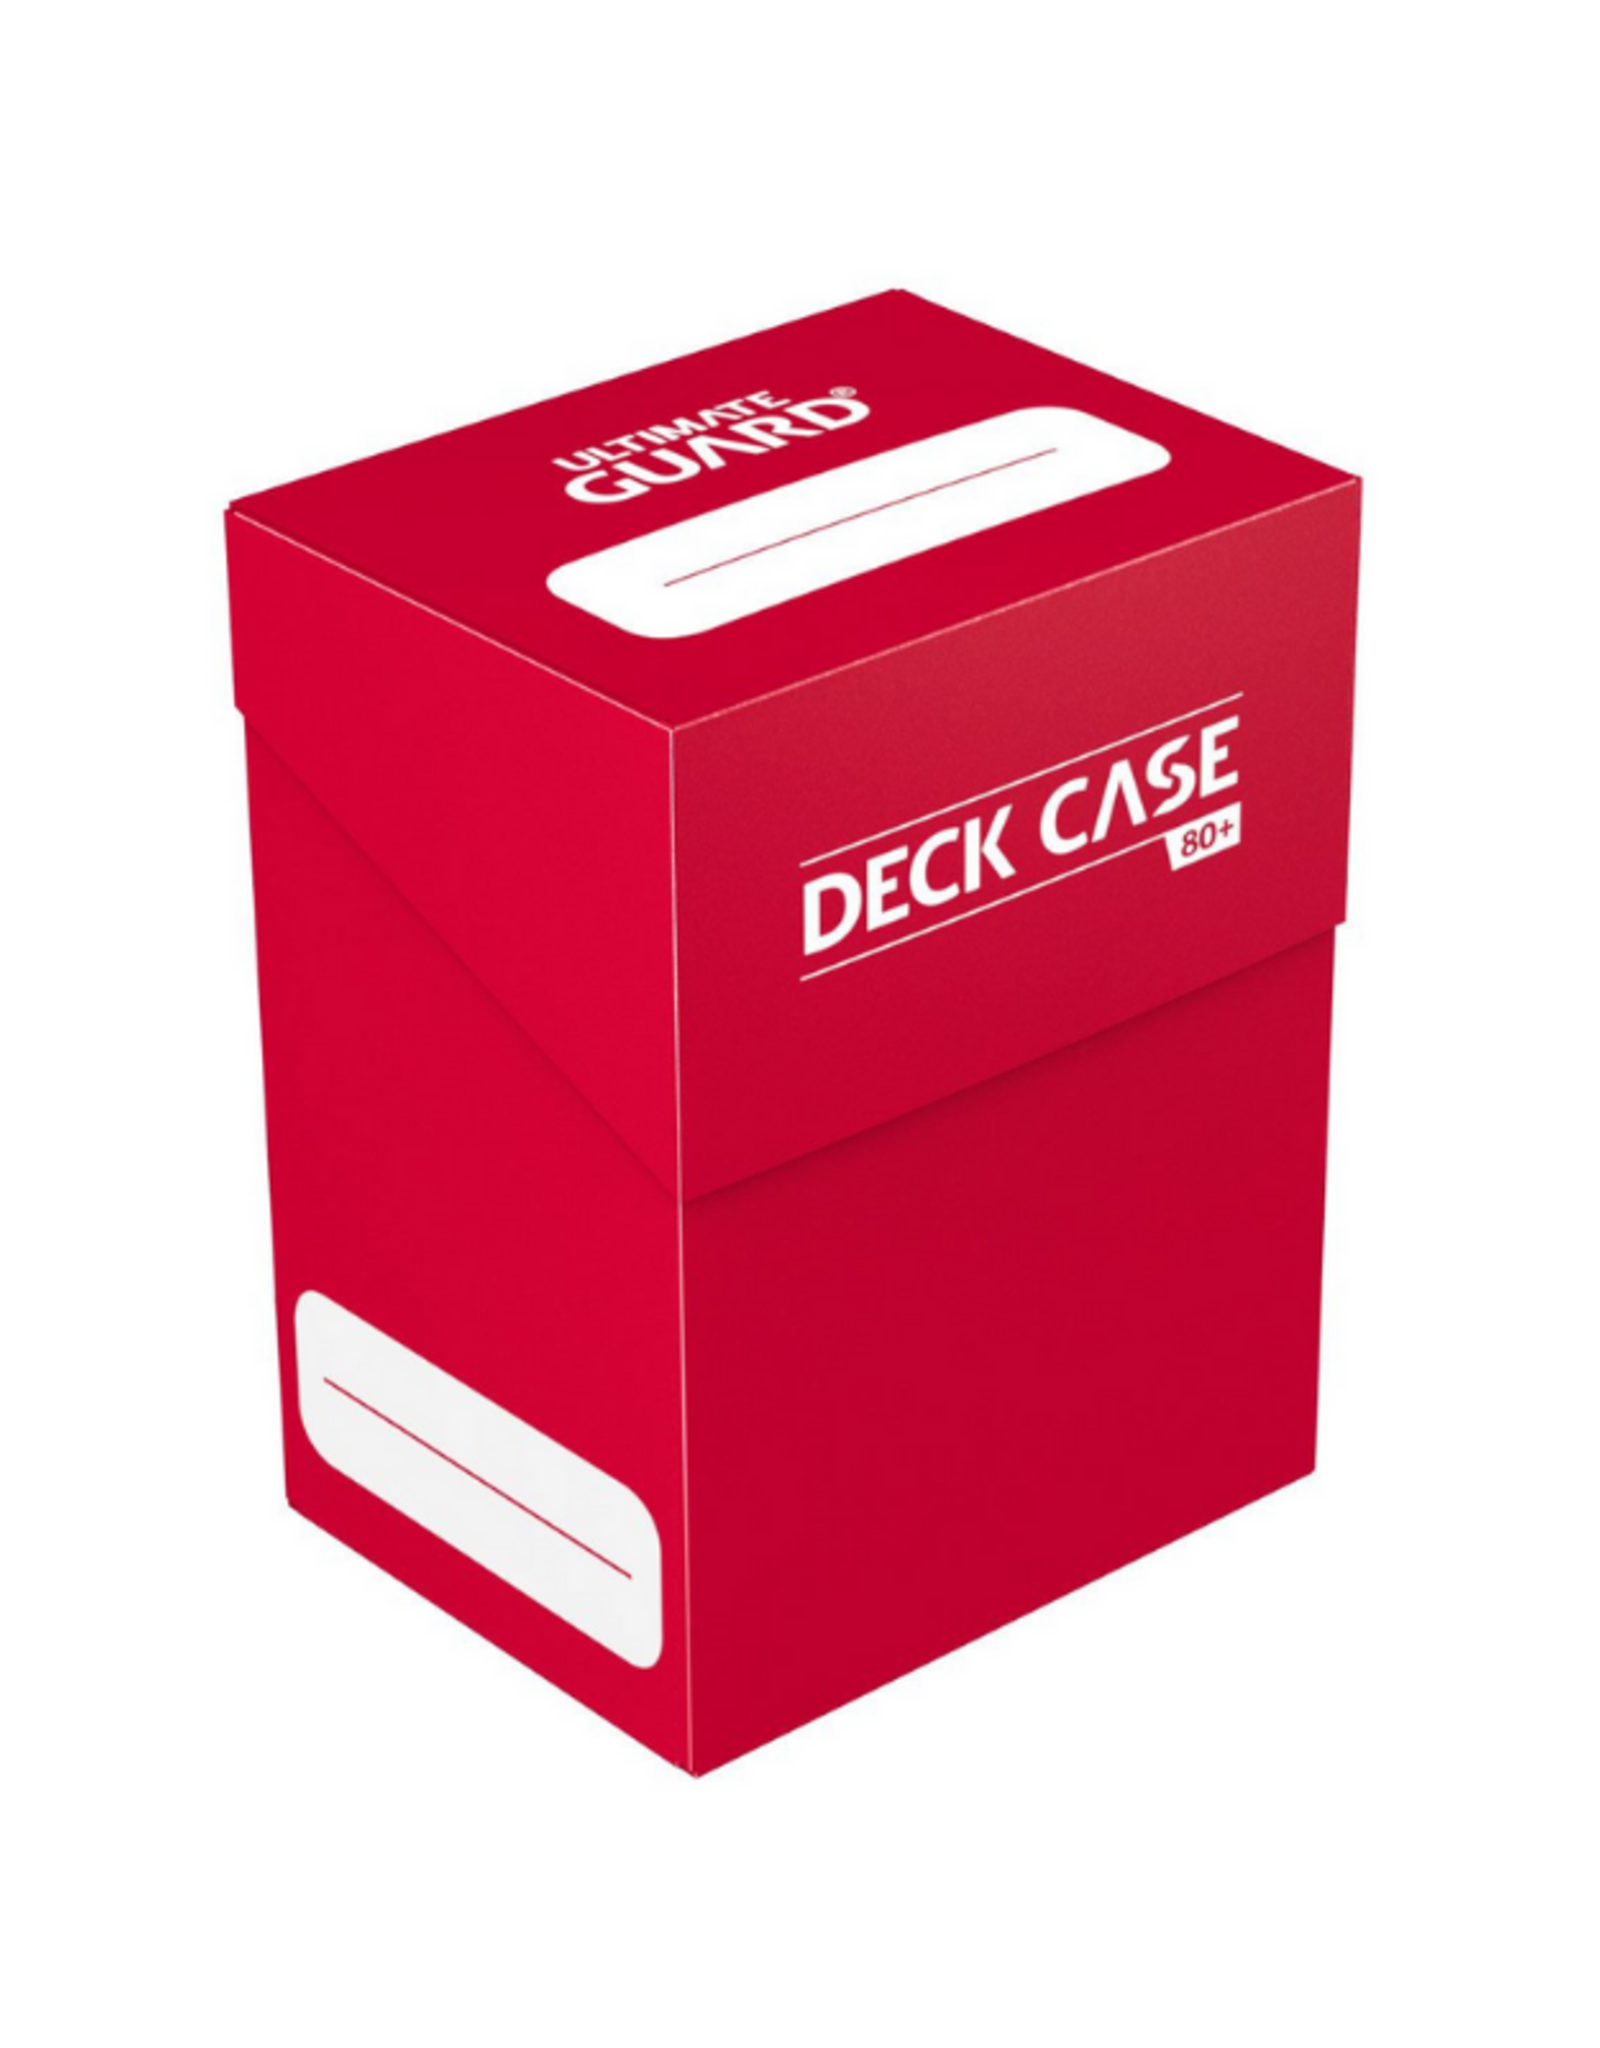 Deck Case: Red